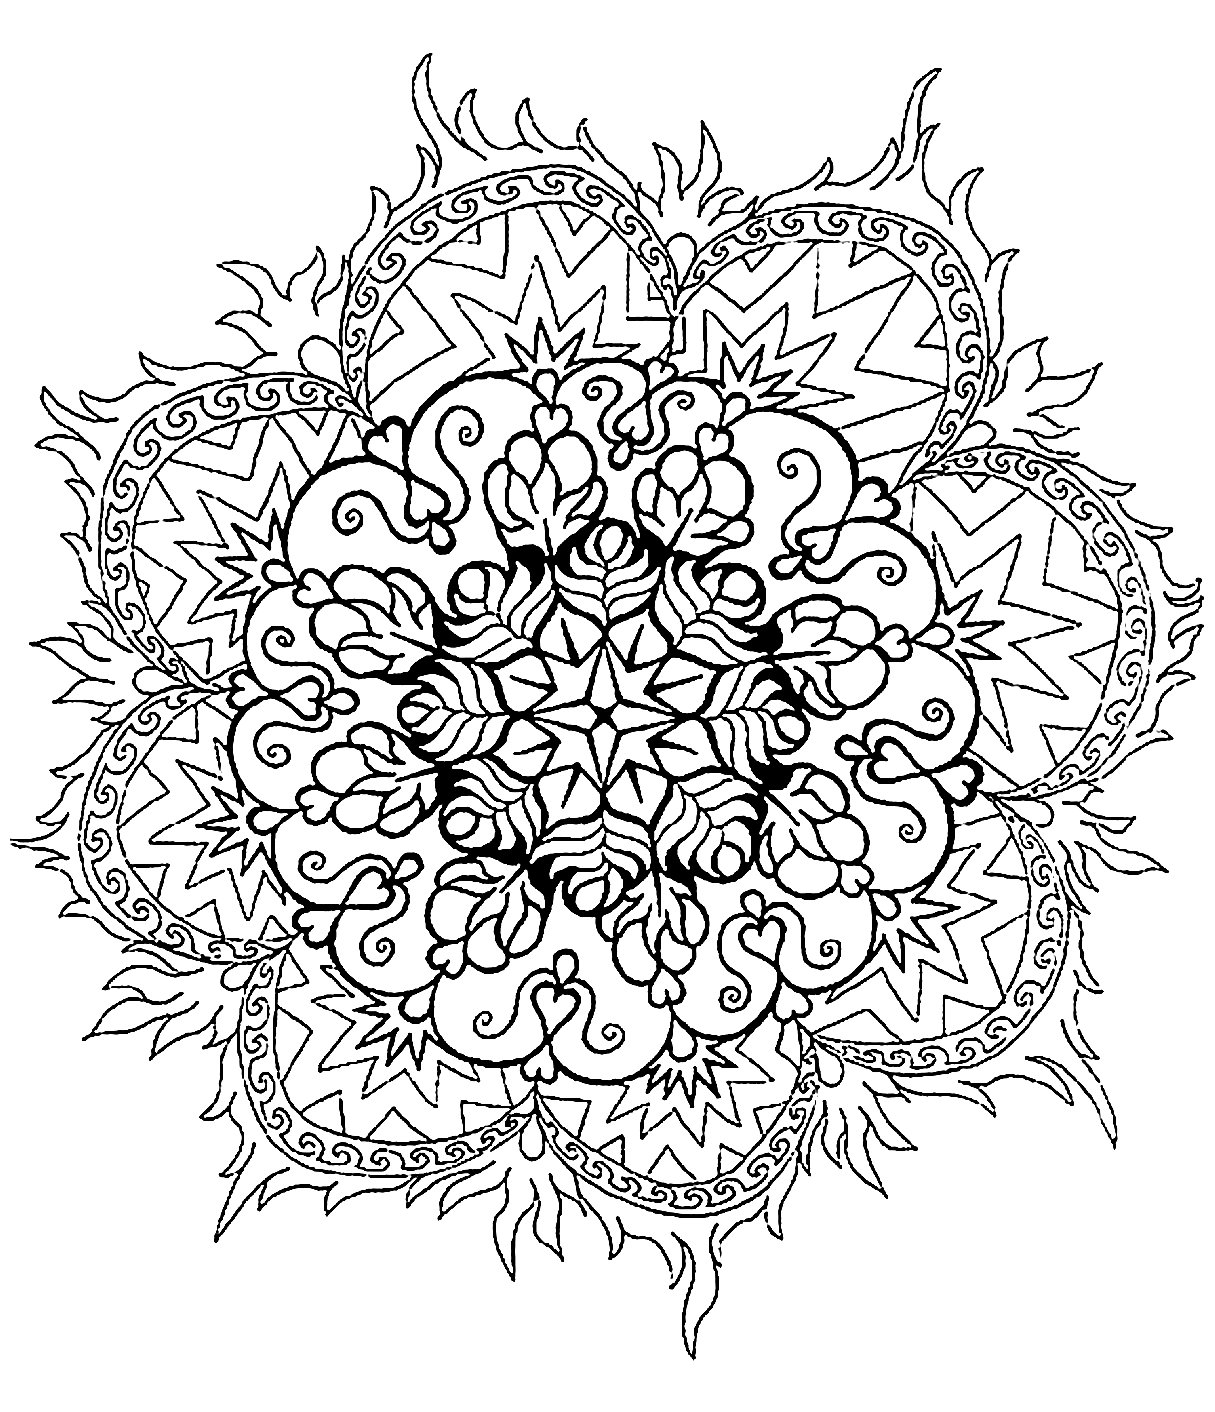 Mandala a colorier difficile - 4 - Mandalas difficiles (pour adultes)